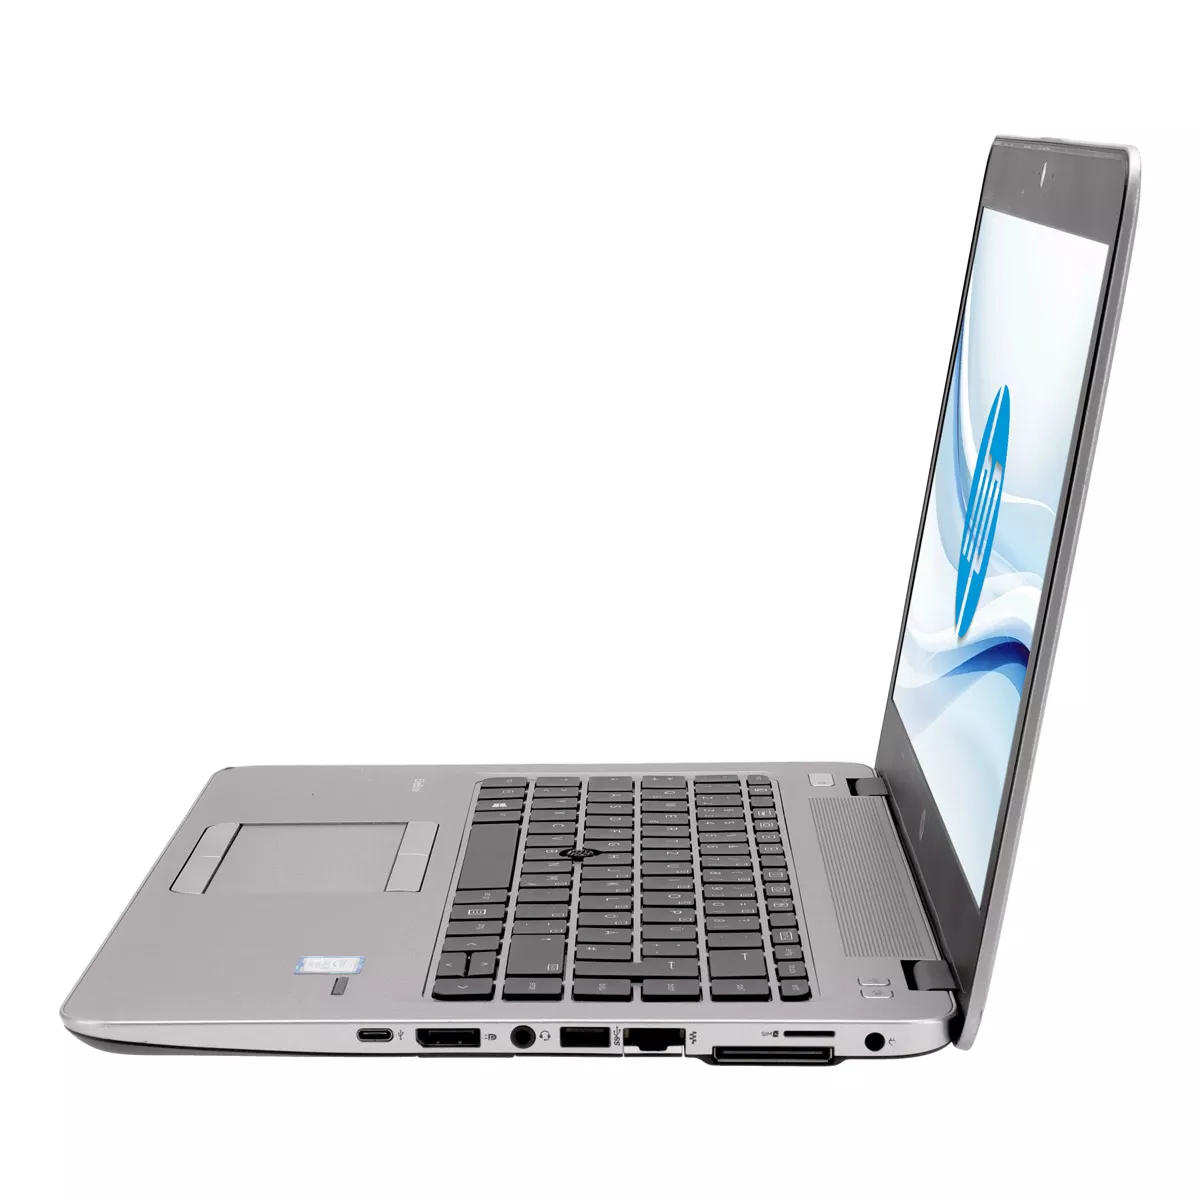 HP EliteBook 840 G4 Core i5 7300U Full-HD 240 GB M.2 SSD Webcam A